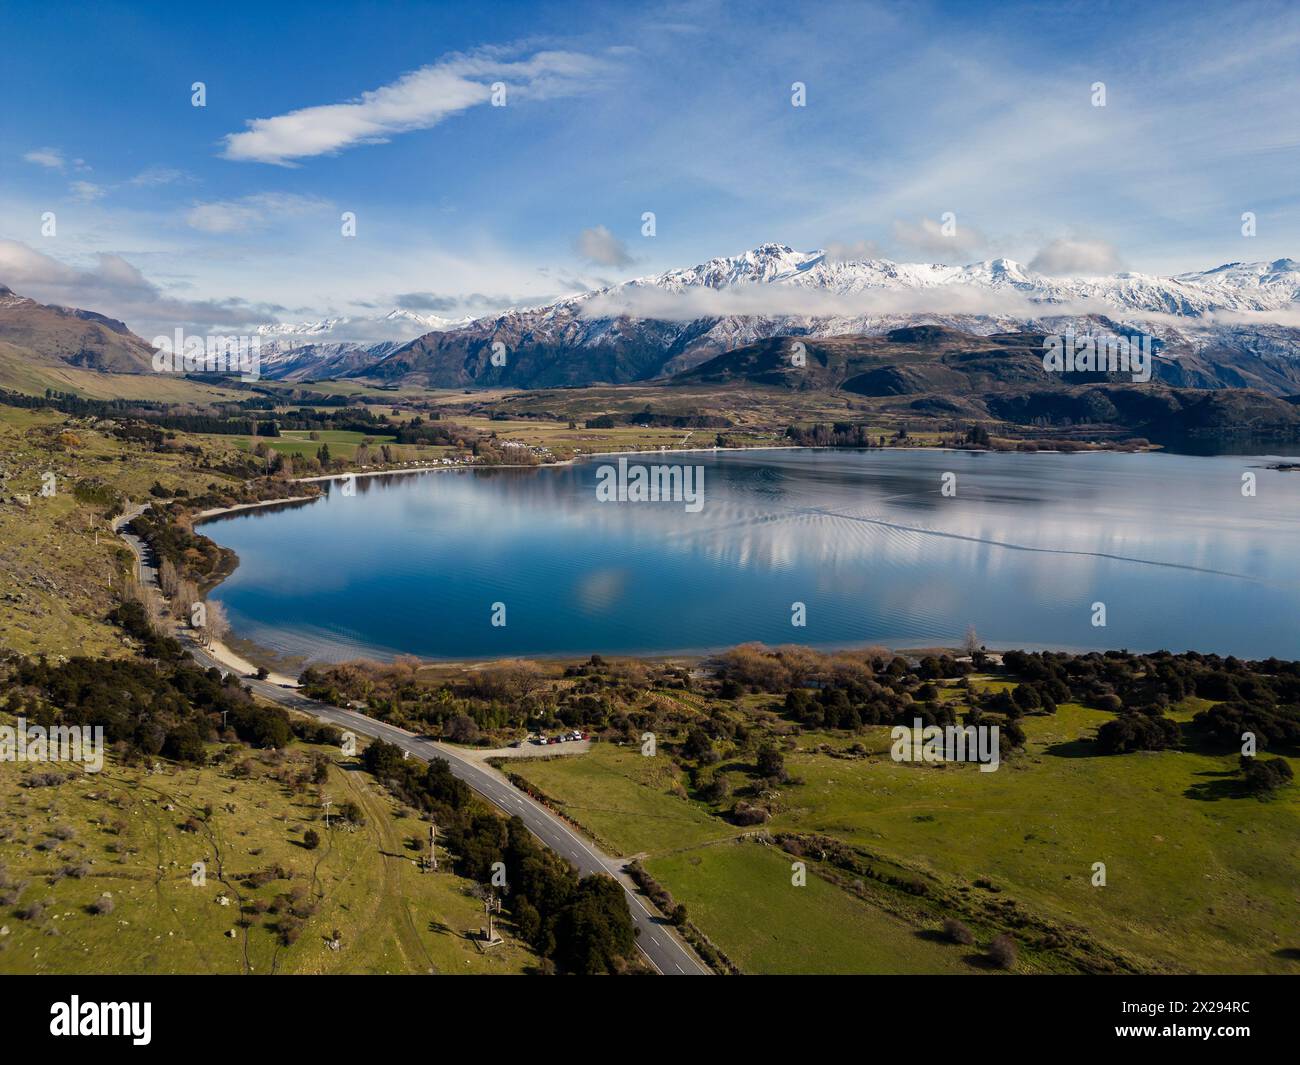 Wanaka, Neuseeland: Luftlinie der Glendhu Bay und Straße am See Wanaka mit dem schneebedeckten Mt, der auf der Südinsel Neuseelands aufstrebt. Stockfoto